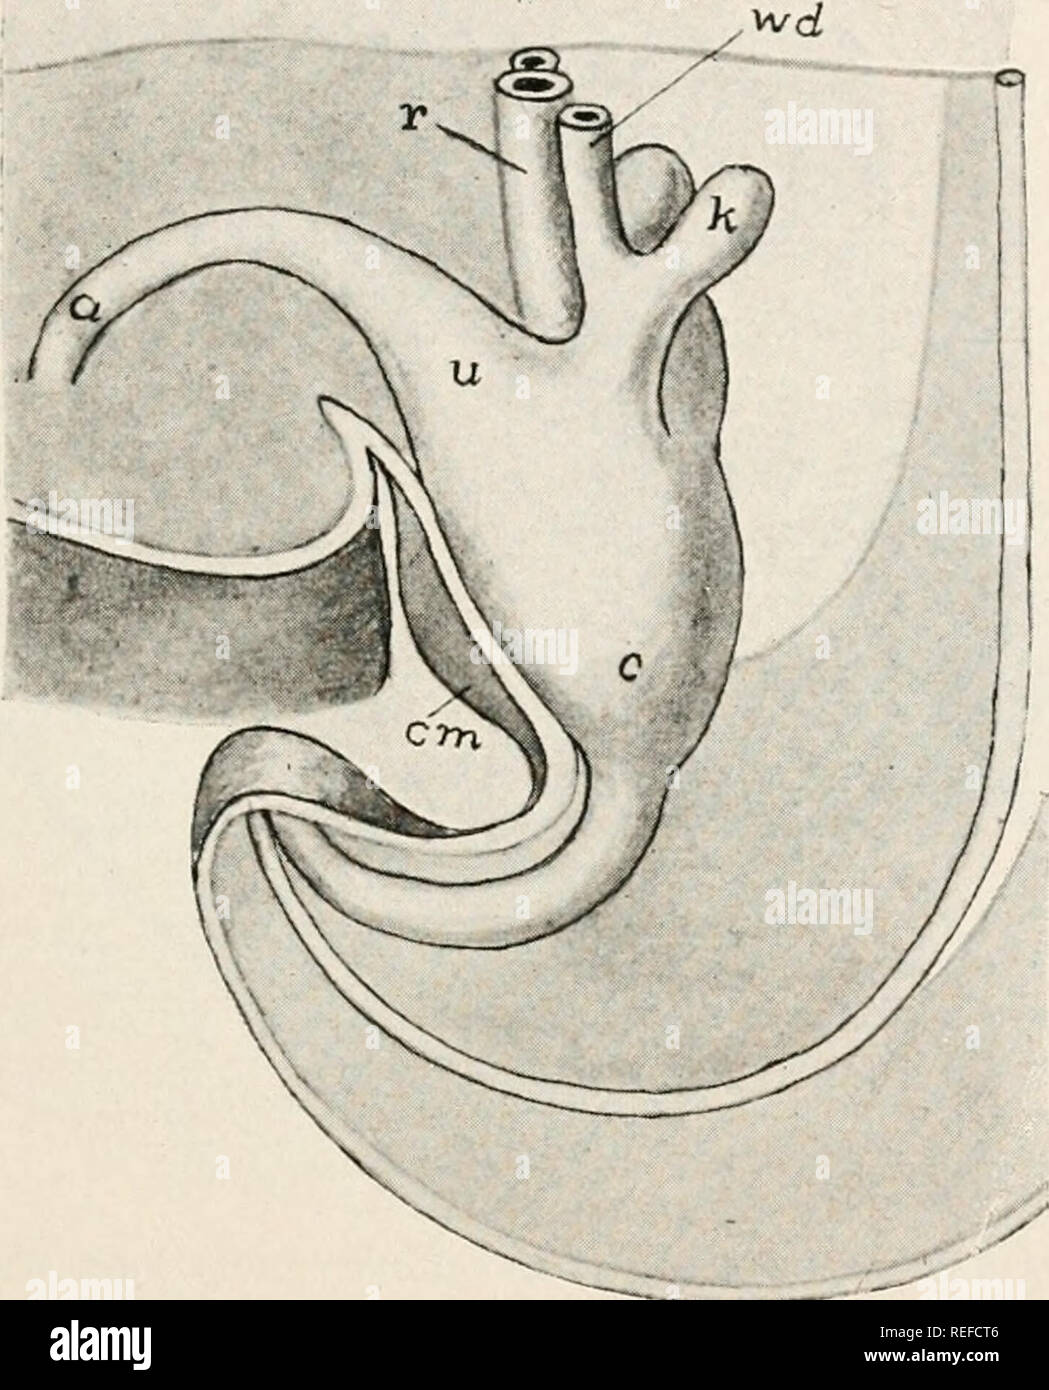 . L'anatomie comparée des vertébrés. L'anatomie, les vertébrés ; Comparatif -- Anatomie. Système urogénital. 335 et les lézards de la gonade est d'un côté à l'avance de l'autre, tandis que dans les formes avec de gros œufs il y a une tendance marquée pour un ovaire de dégénérer (droit chez les oiseaux) l'autre étant fonctionnel. Les oviductes, Müller, sont modifiées conformément à l'peculiarites des oeufs. La partie supérieure est généralement bien enroulé et glandulaire, cette partie du tube la sécrétion blanche, alors que plus loin des pièces vers le formulaire d'ouverture de l'extérieur la membrane et la coquille. Le w Banque D'Images